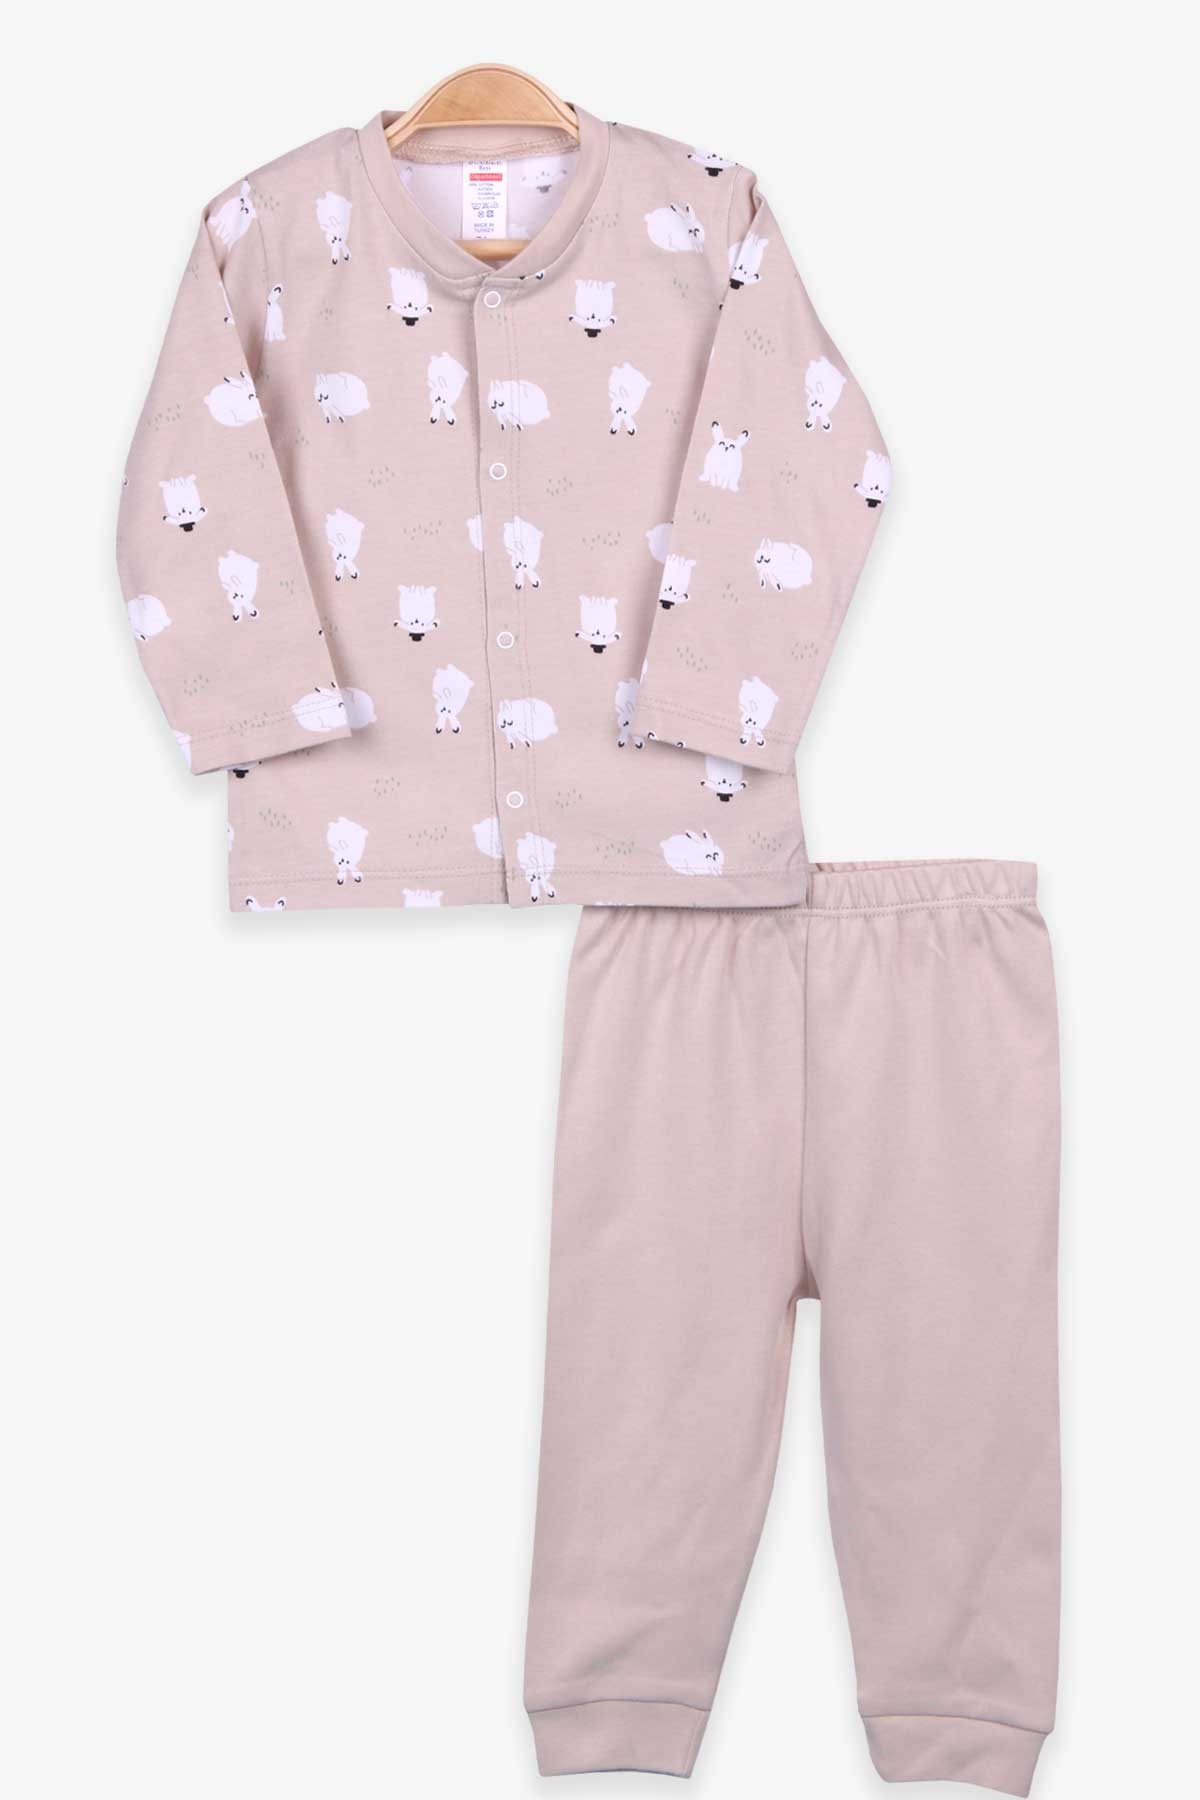 Erkek Bebek Pijama Takımı Tavşanlı Açık Kahverengi 0-3-6 Ay - Yumuşak Kumaş  | Breeze